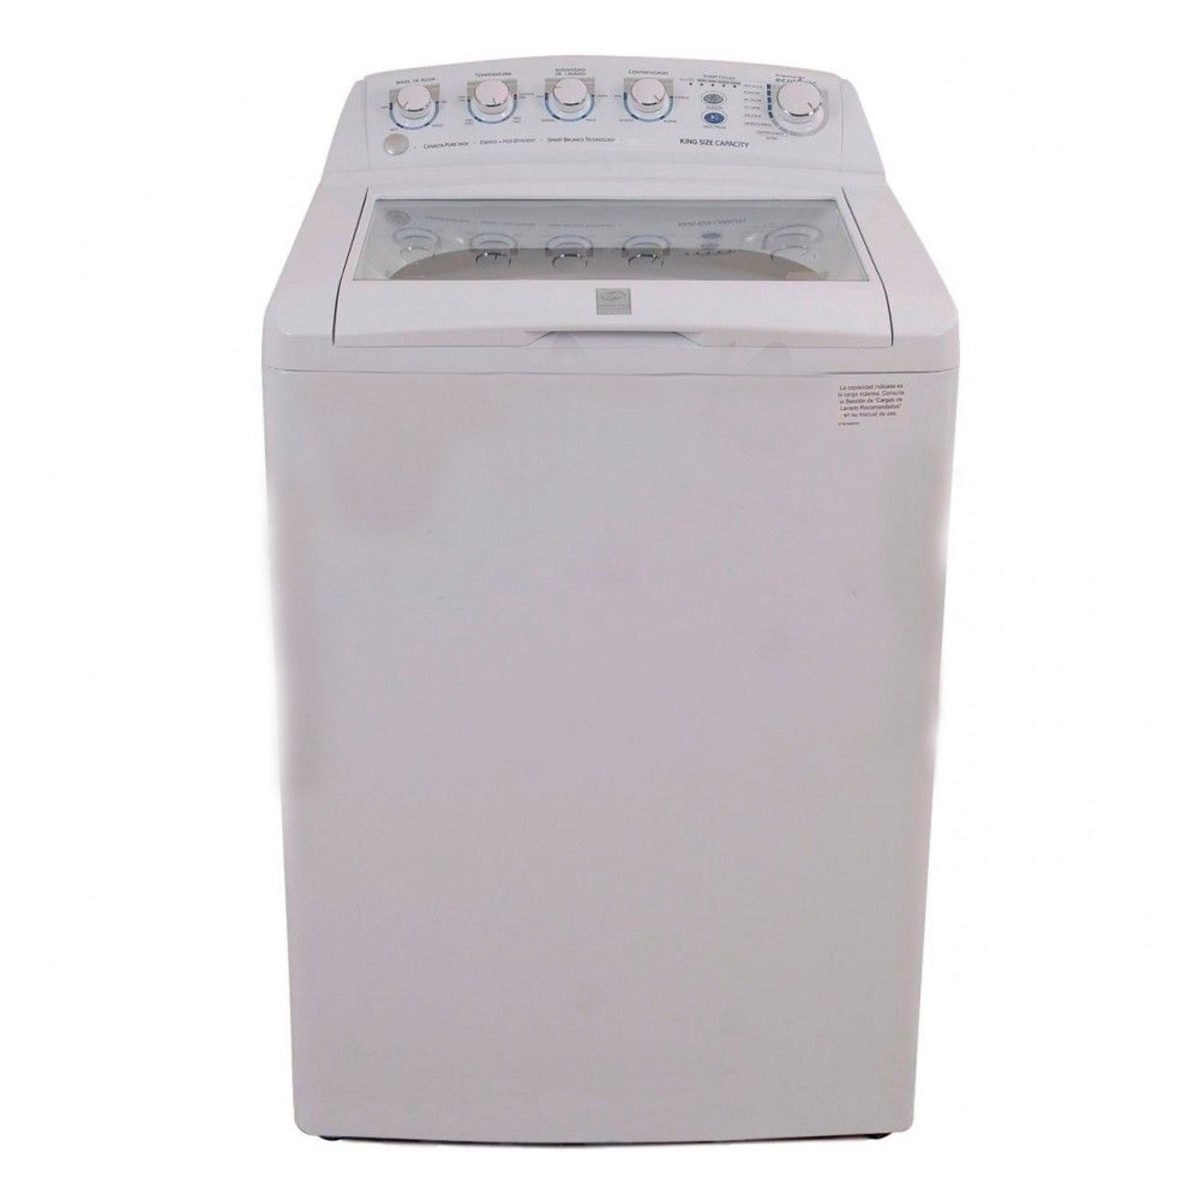 Lavadora automática 15kg Blanca GE - WGI15502XSBB10, Lavadoras Servicio, Lavado y Secado Servicio